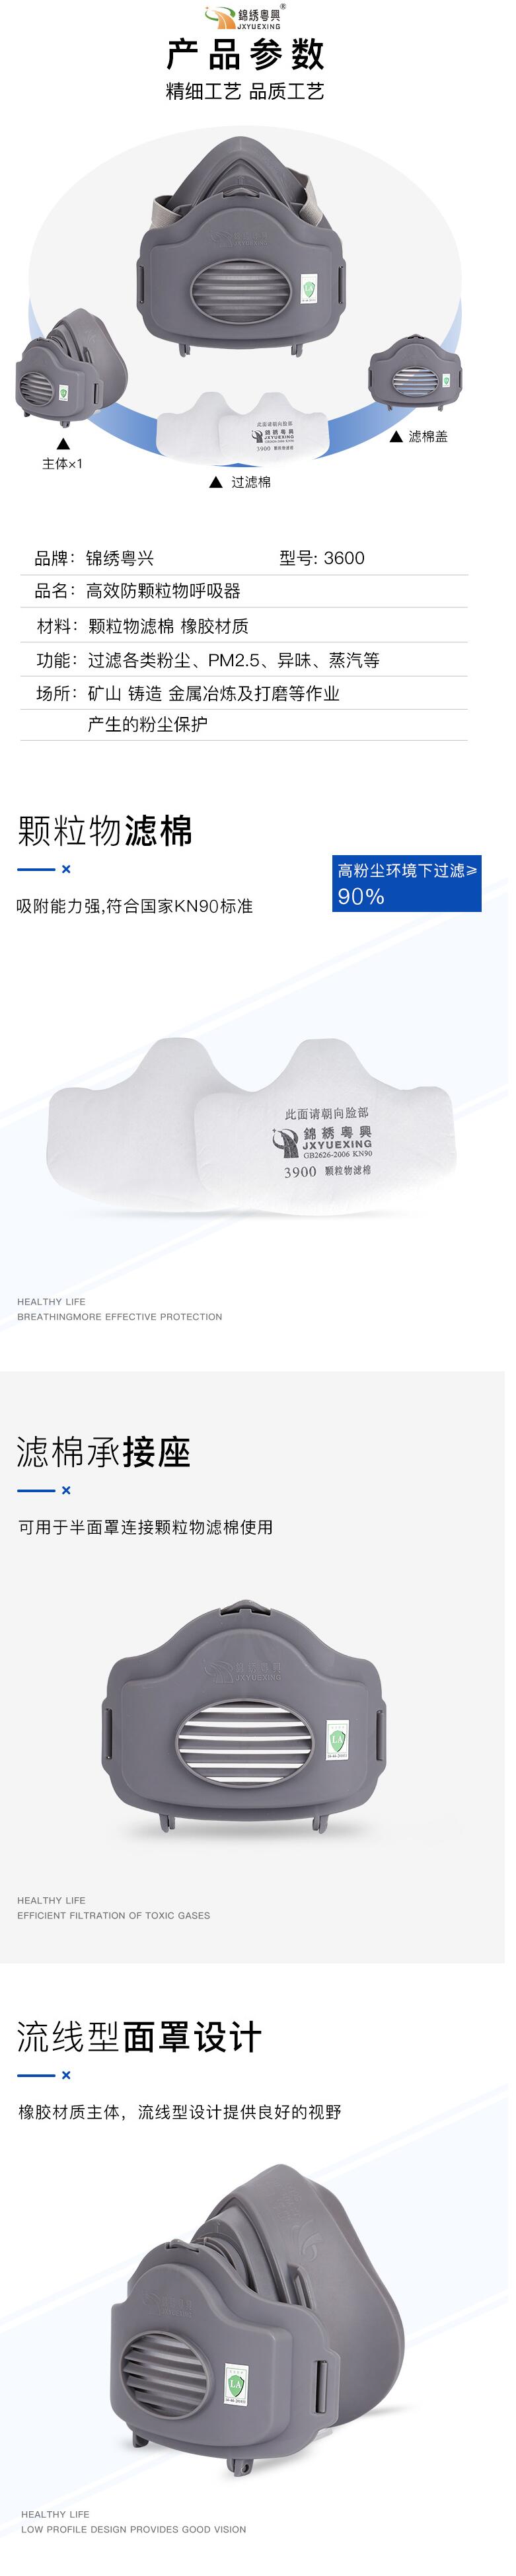 锦绣粤兴3600橡胶单滤盒半面罩防毒面具图片